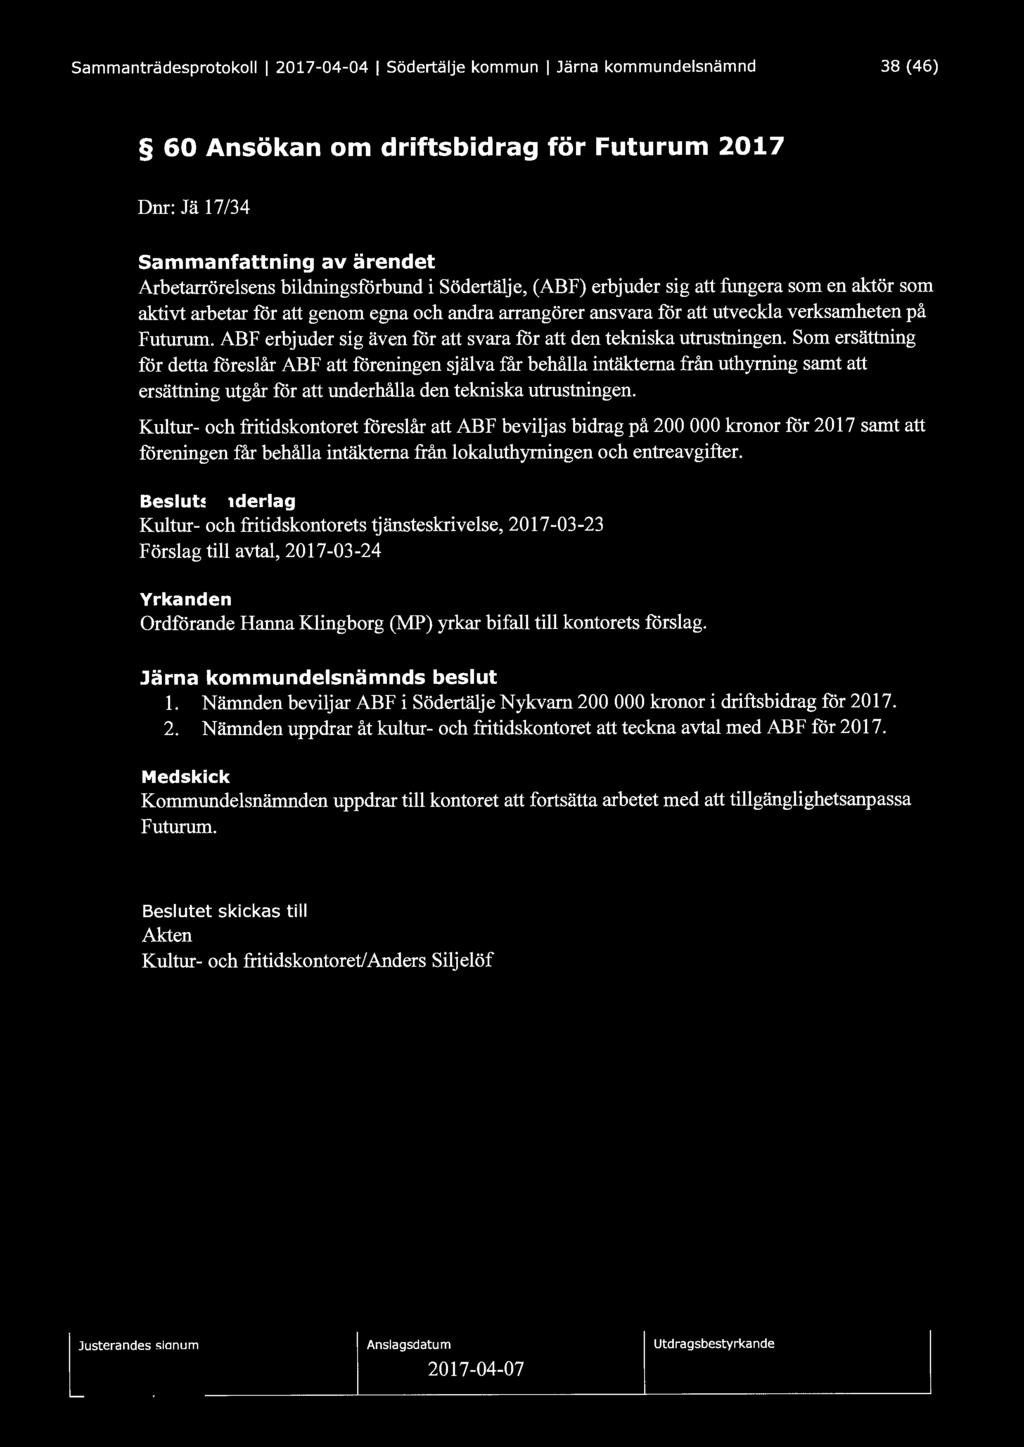 Sammanträdesprotokoll l 2017-04-04 1 Södertälje kommun 1 Järna kommundelsnämnd 38 (46) 60 Ansökan om driftsbidrag för Futurum 2017 Dnr: J ä 17/34 Sammanfattning av ärendet Arbetarrörelsens